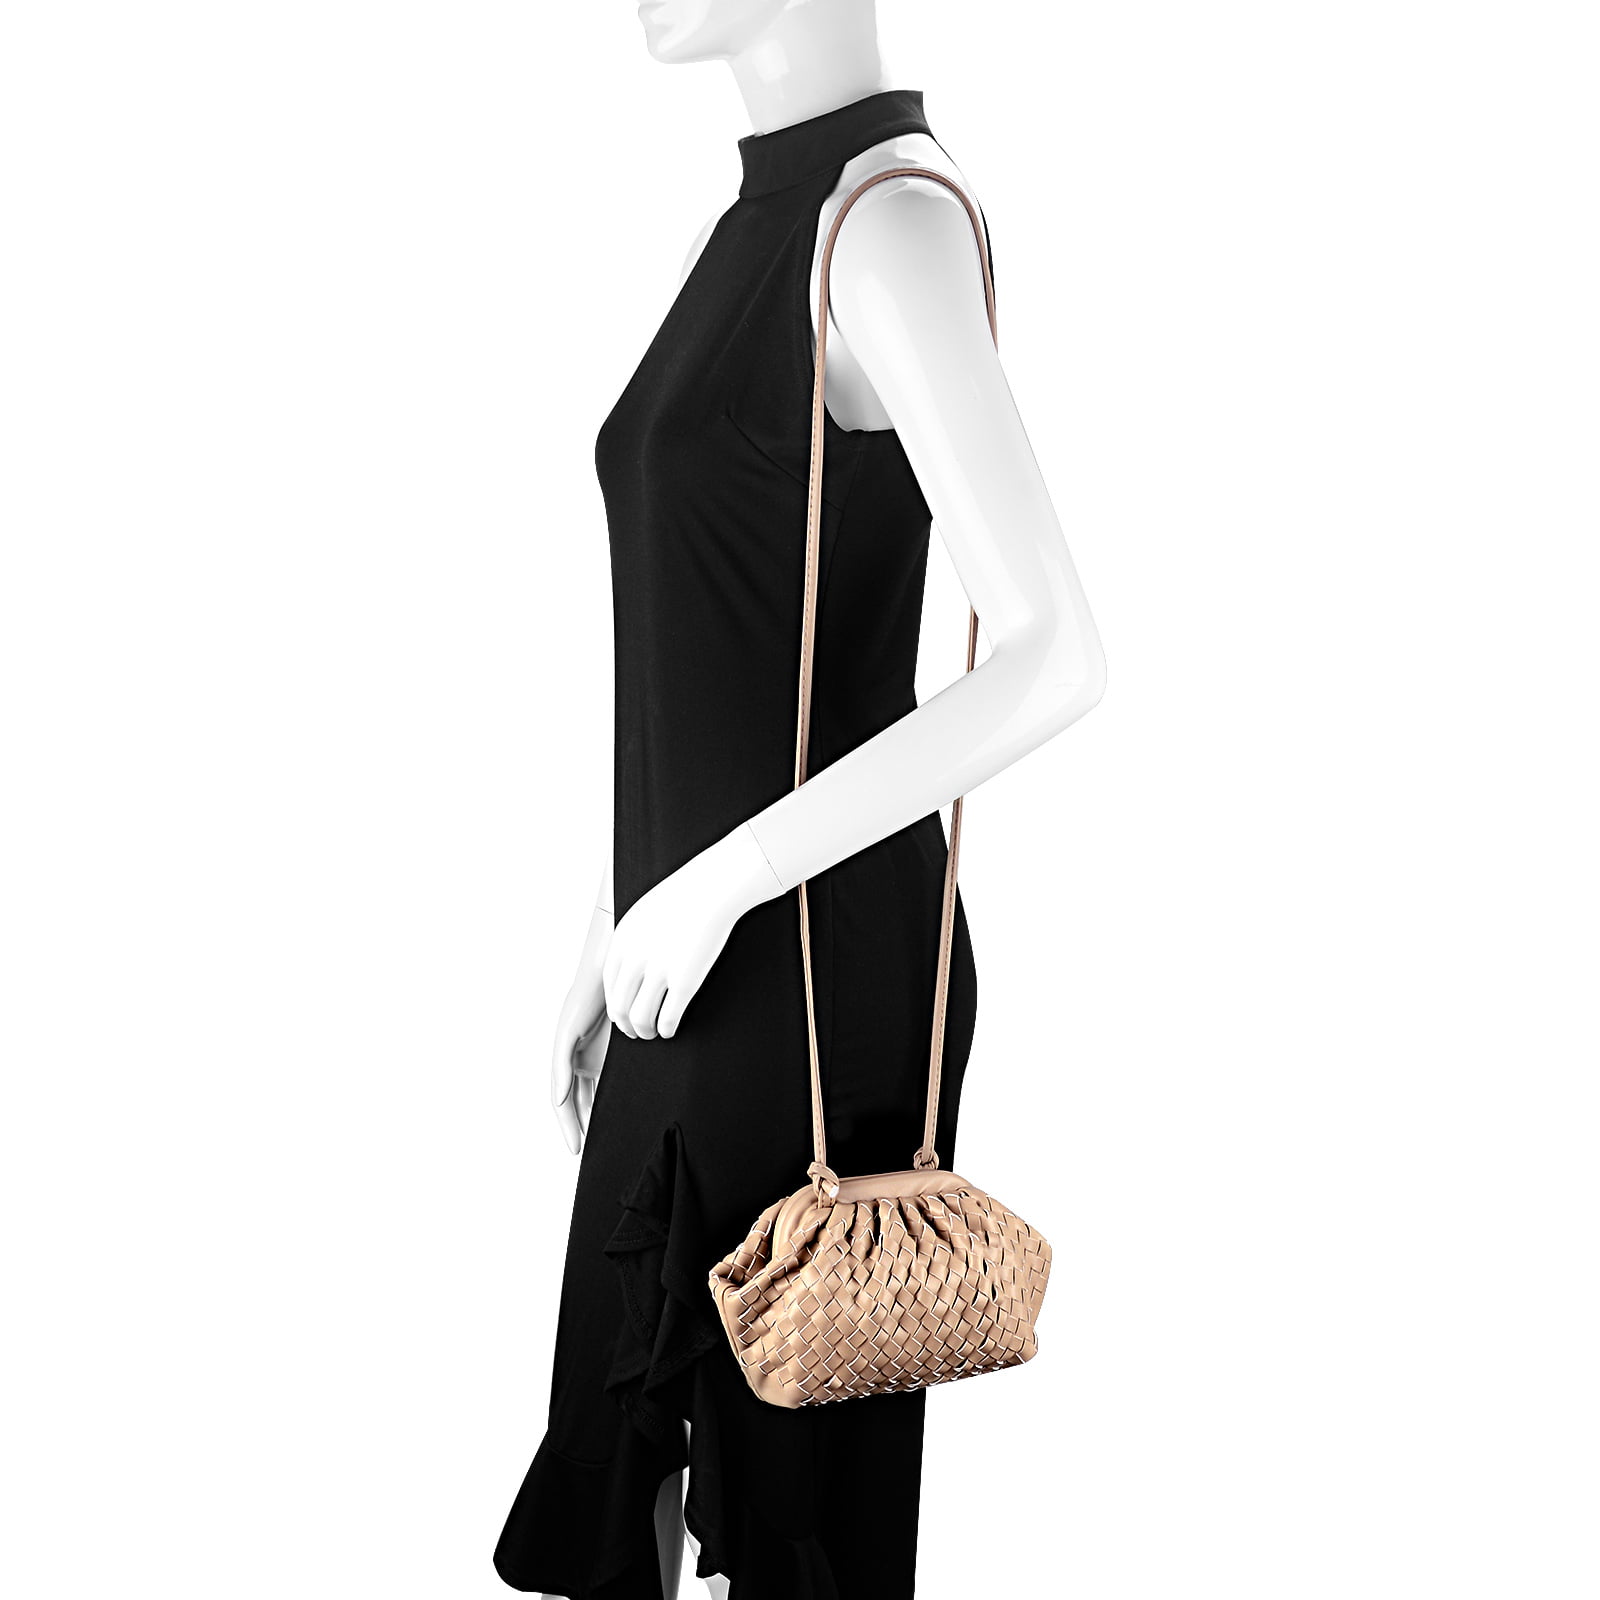 KingTo Small Shoulder Handbag for Women, Soft Designer Cloud Pouch Bag Lightweight Crossbody Clutch Purse